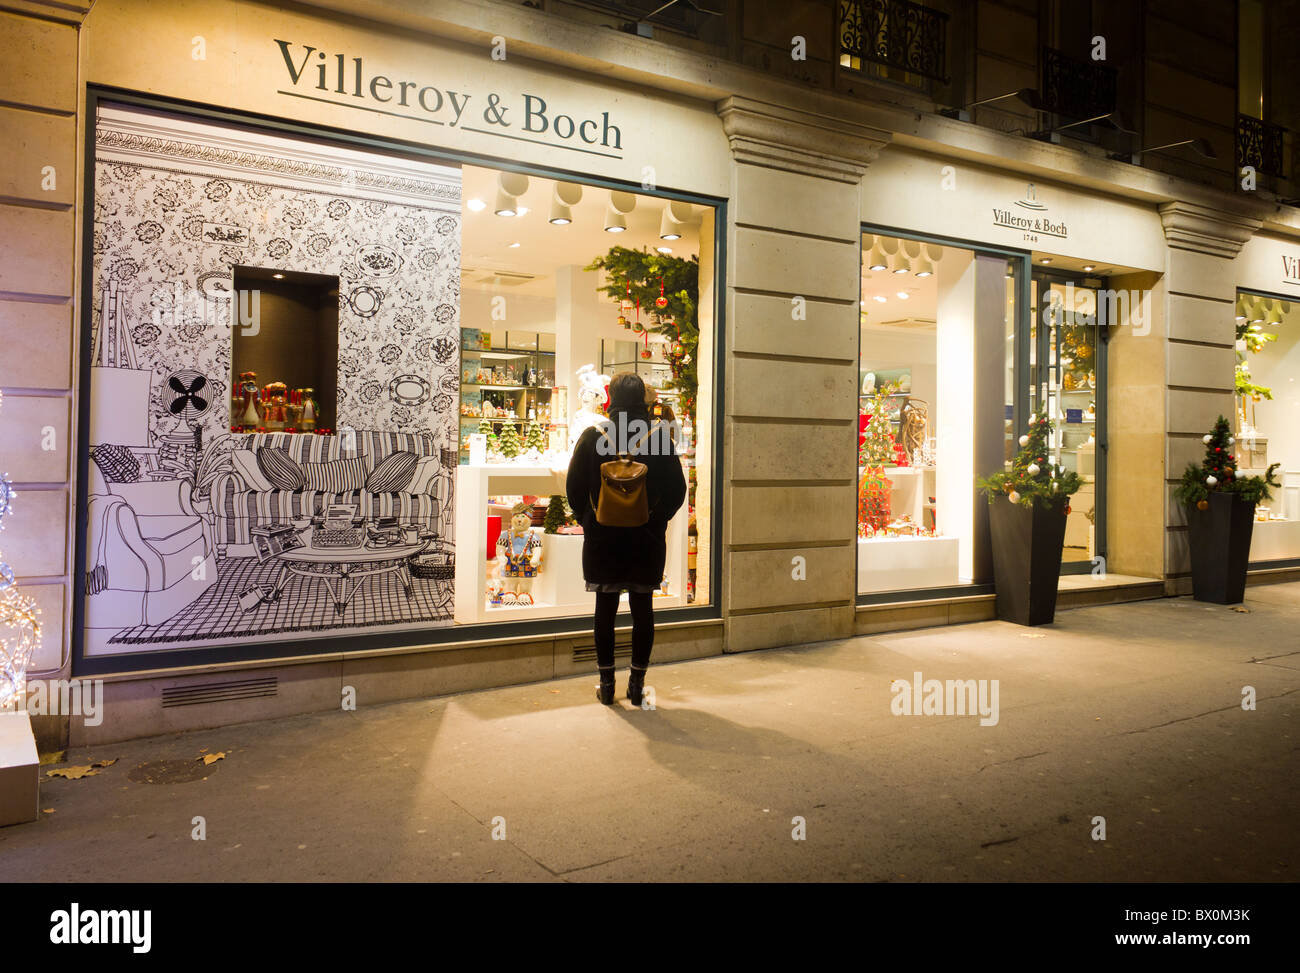 Villeroy & Boch boutique de luxe avec une décoration de Noël, rue Royale, Paris, France Banque D'Images